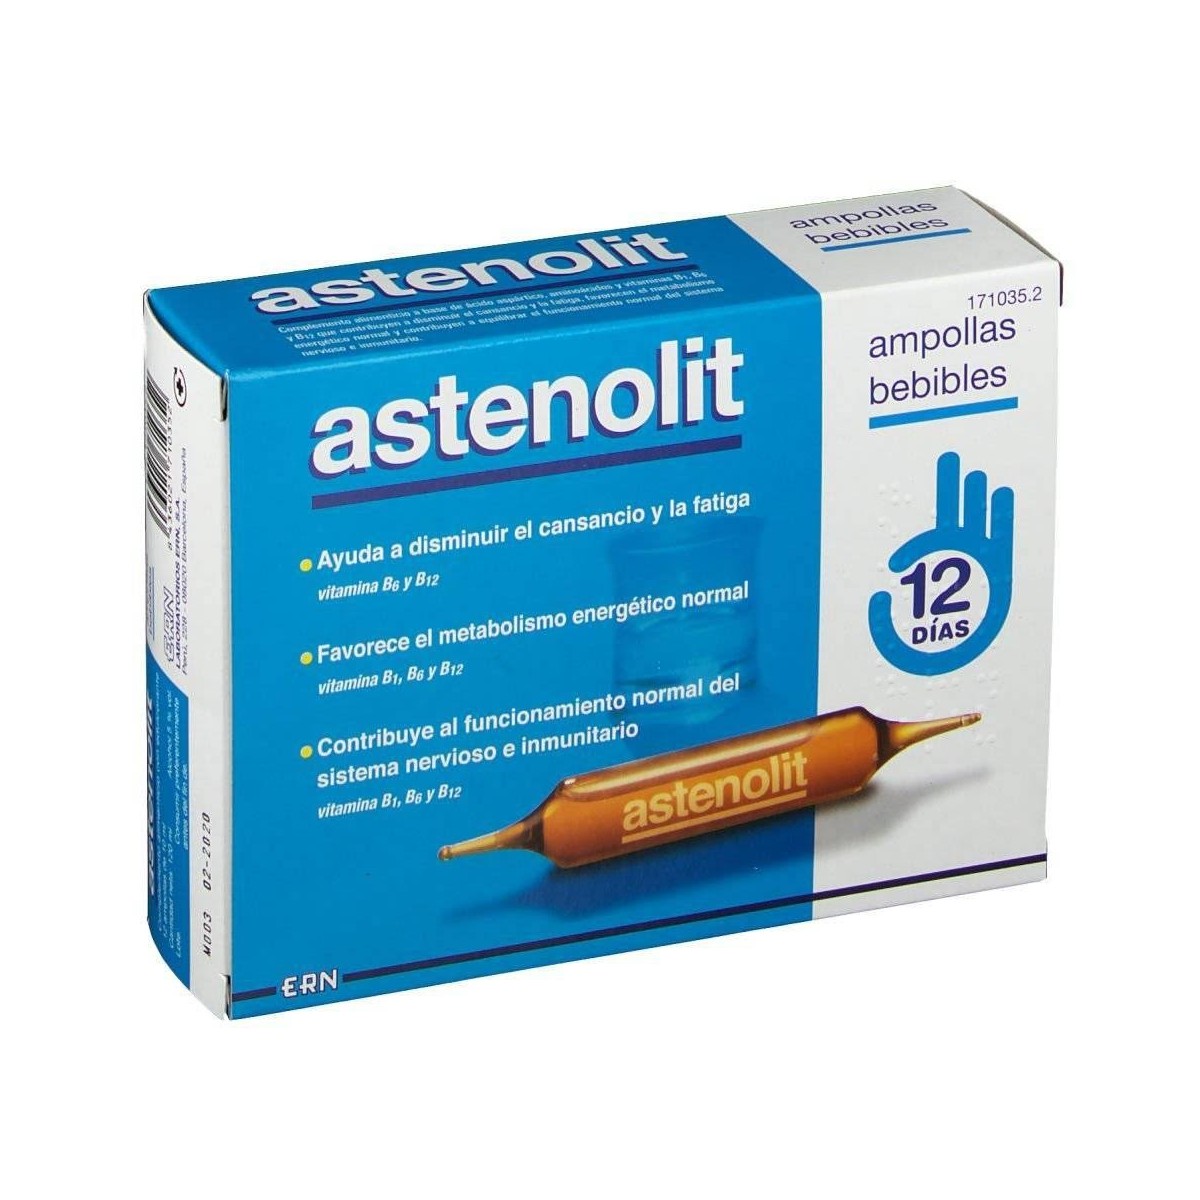 astenolit-12-ampollas-bebibles